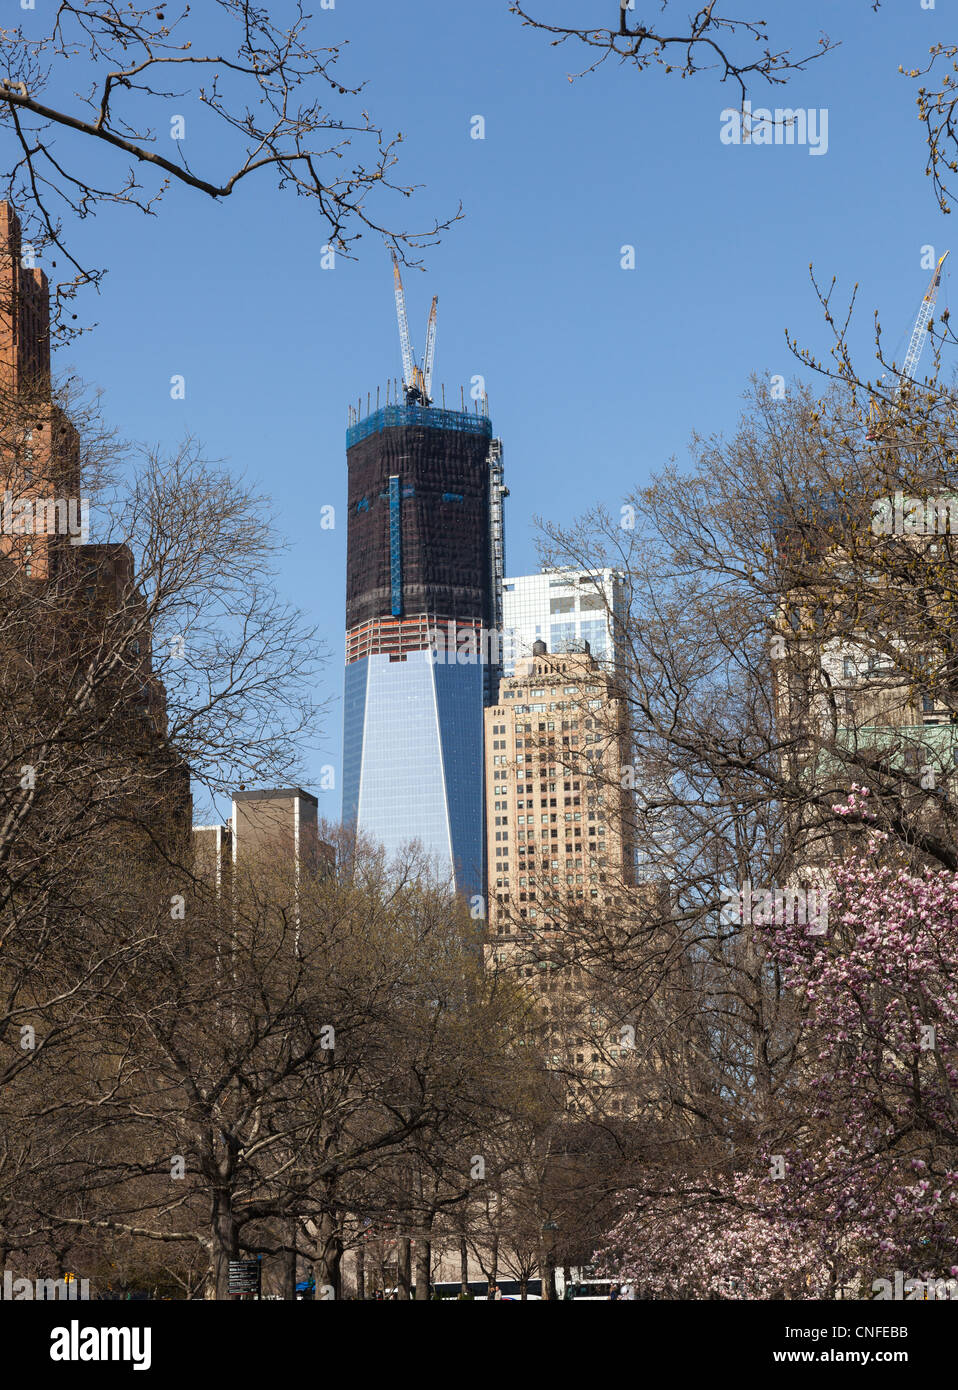 NEW YORK, USA - März 26: Freedom Tower oder 1WTC im Bau am 26. März 2012. Der Turm wird 1776 Fuß hoch nach Abschluss sein. Stockfoto